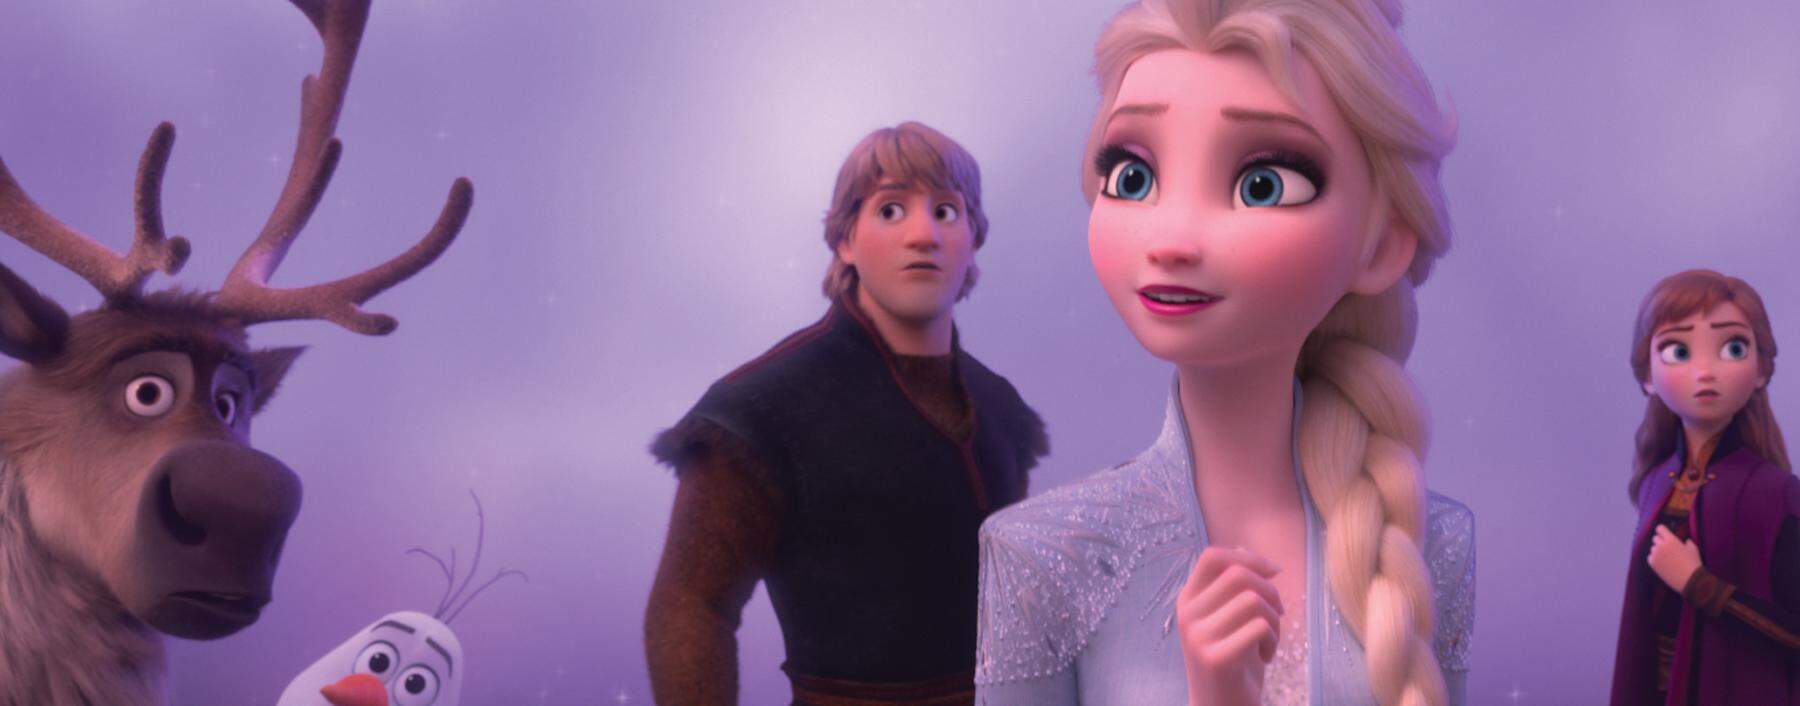 „Eiskönigin“ Elsa und ihre Schwester Anna kommen zum zweiten Mal ins Kino. Hier ist es allen Klischees zum Trotz übrigens ein Mann, der mit einem Tier (seinem Rentier) spricht.